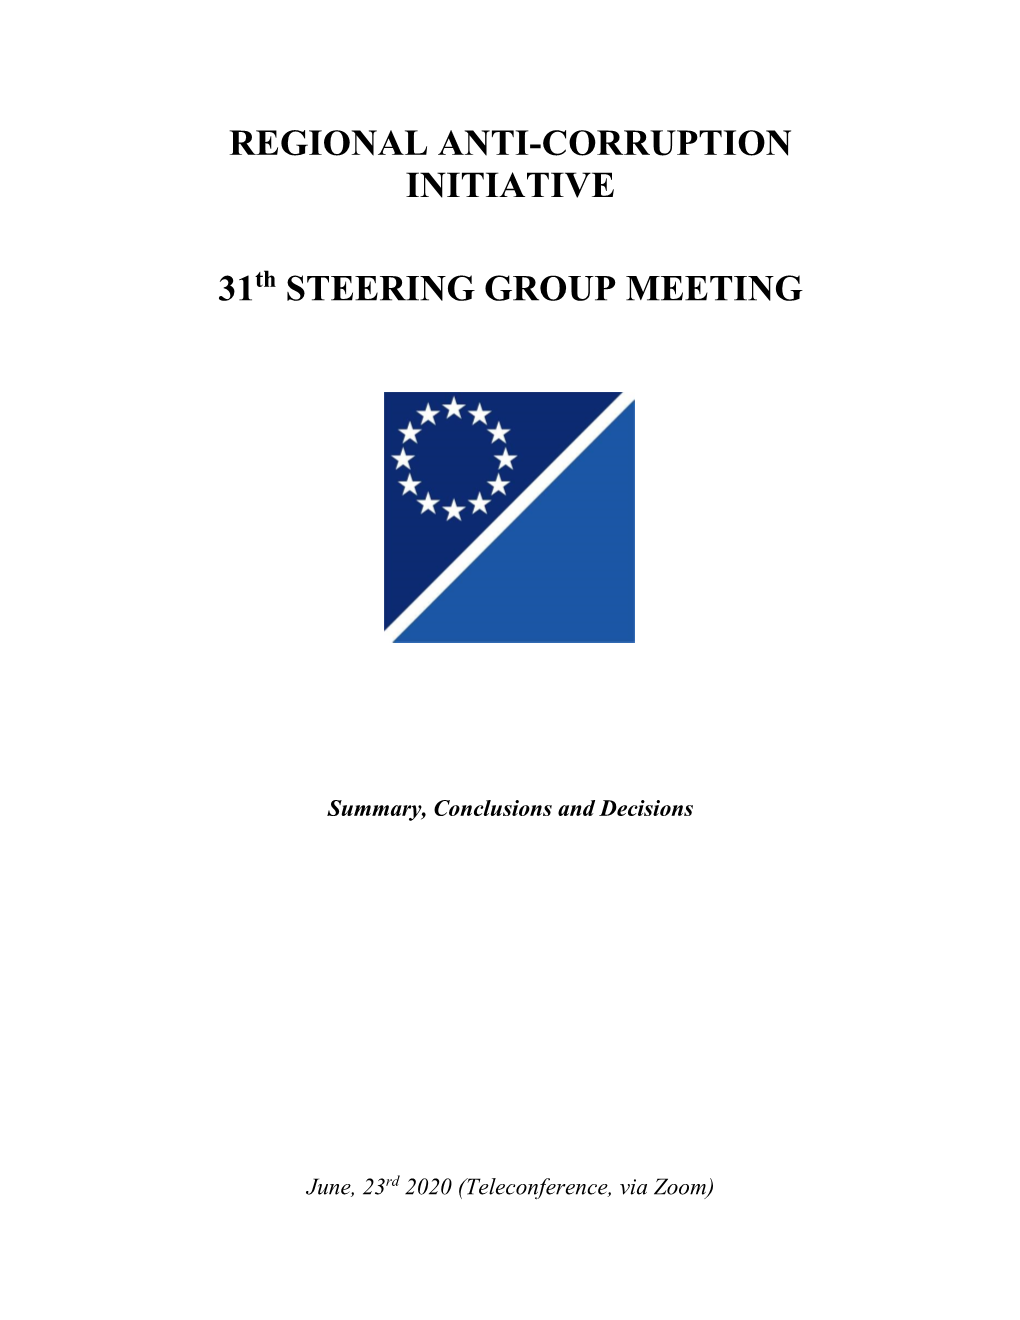 Regional Anti-Corruption Initiative 31 Steering Group Meeting